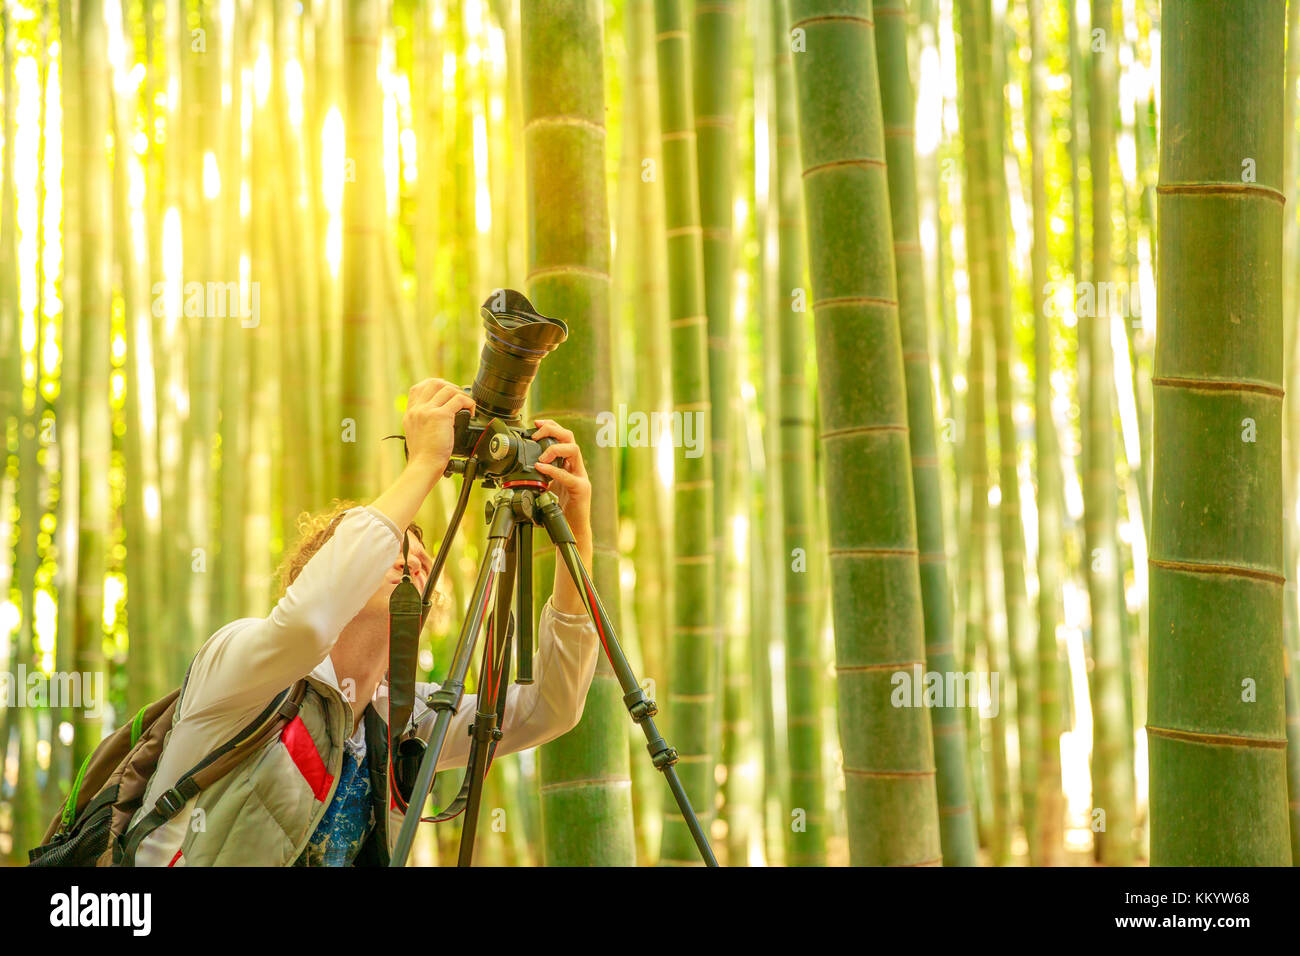 Prendere-dera fotografo di bambù Foto Stock